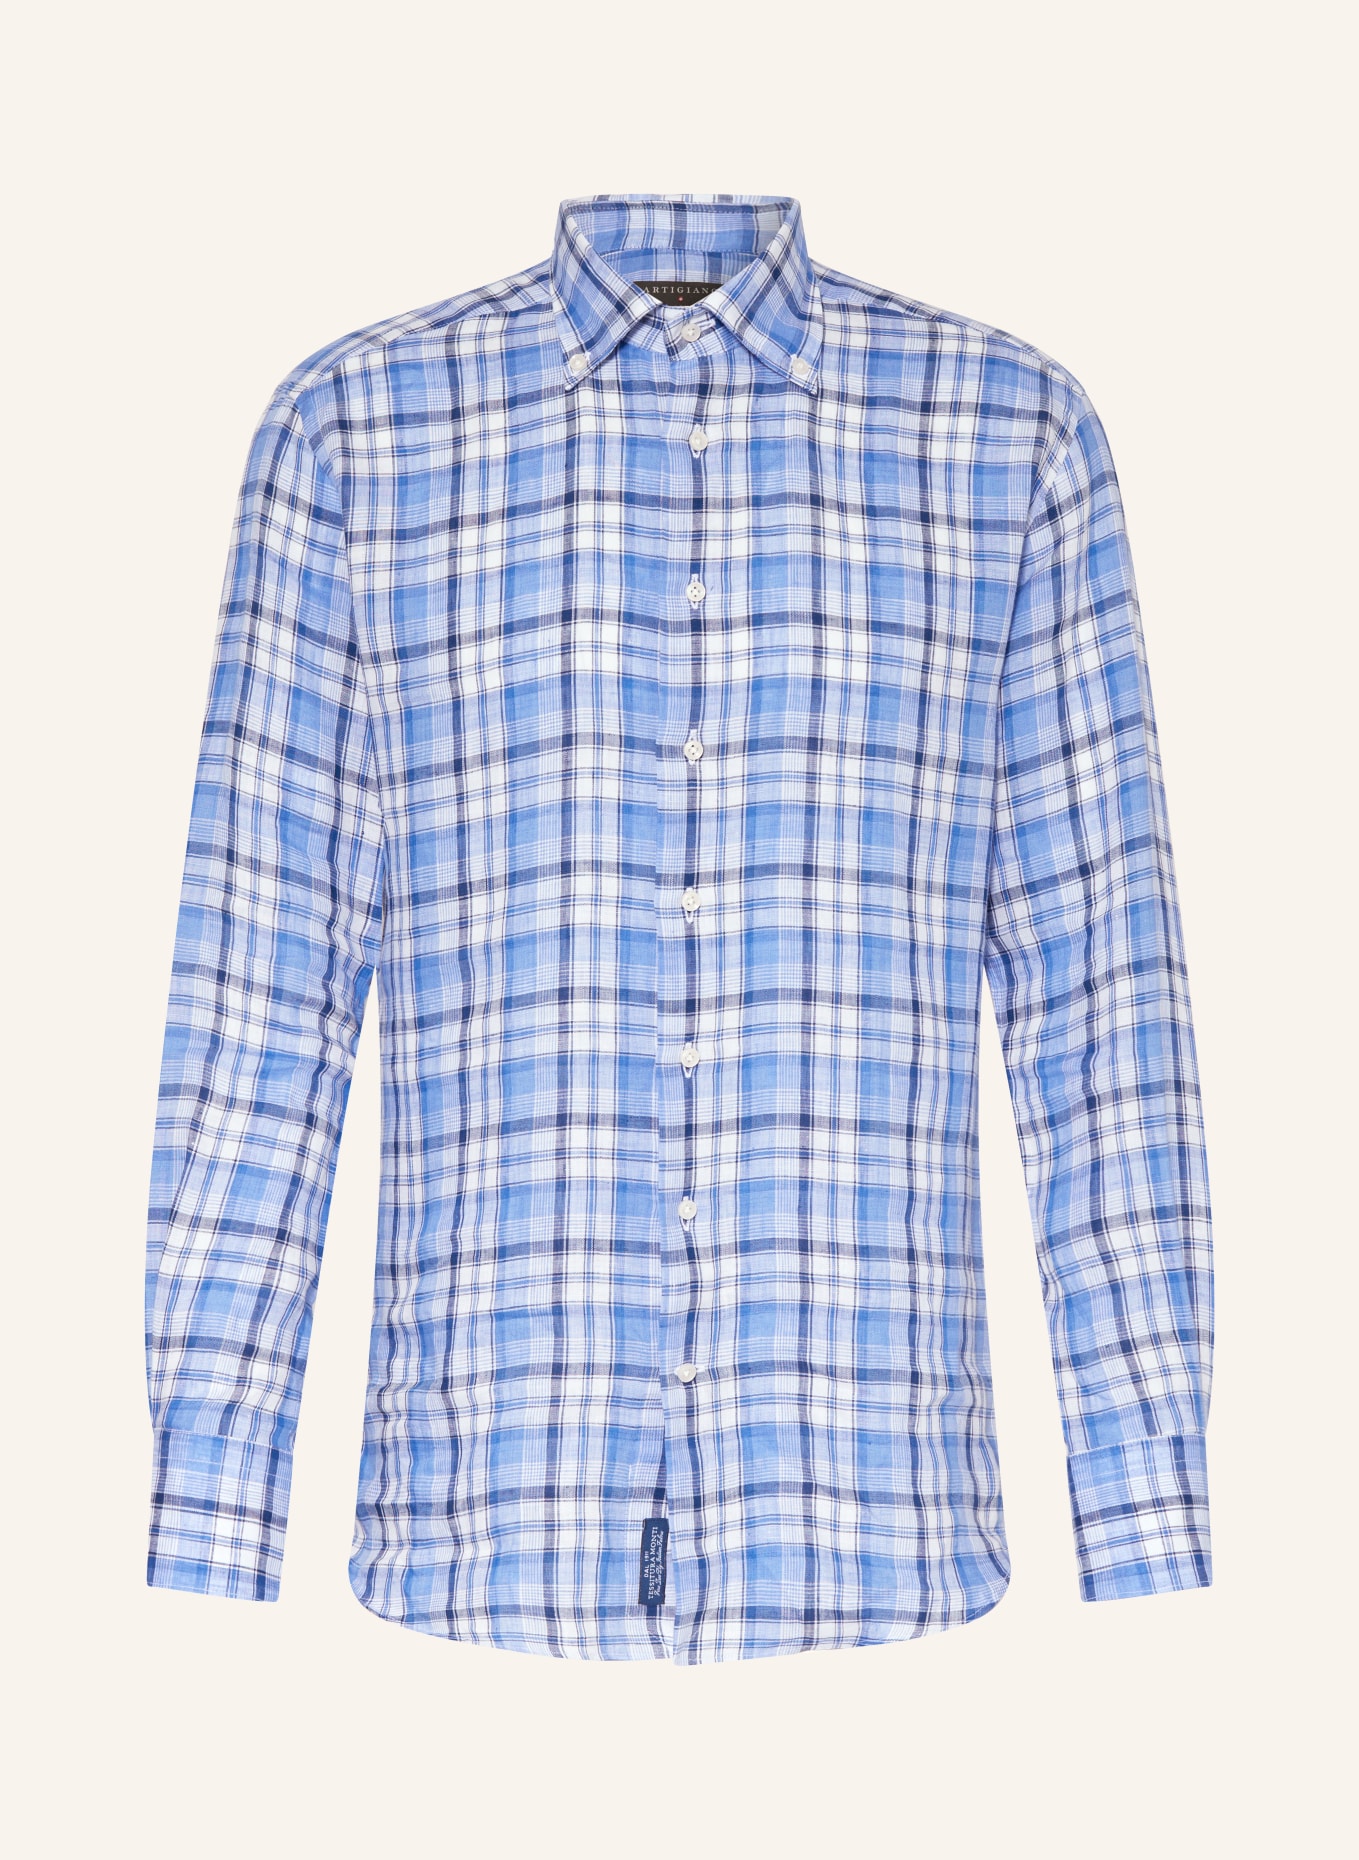 ARTIGIANO Linen shirt classic fit, Color: LIGHT BLUE/ DARK BLUE/ WHITE (Image 1)